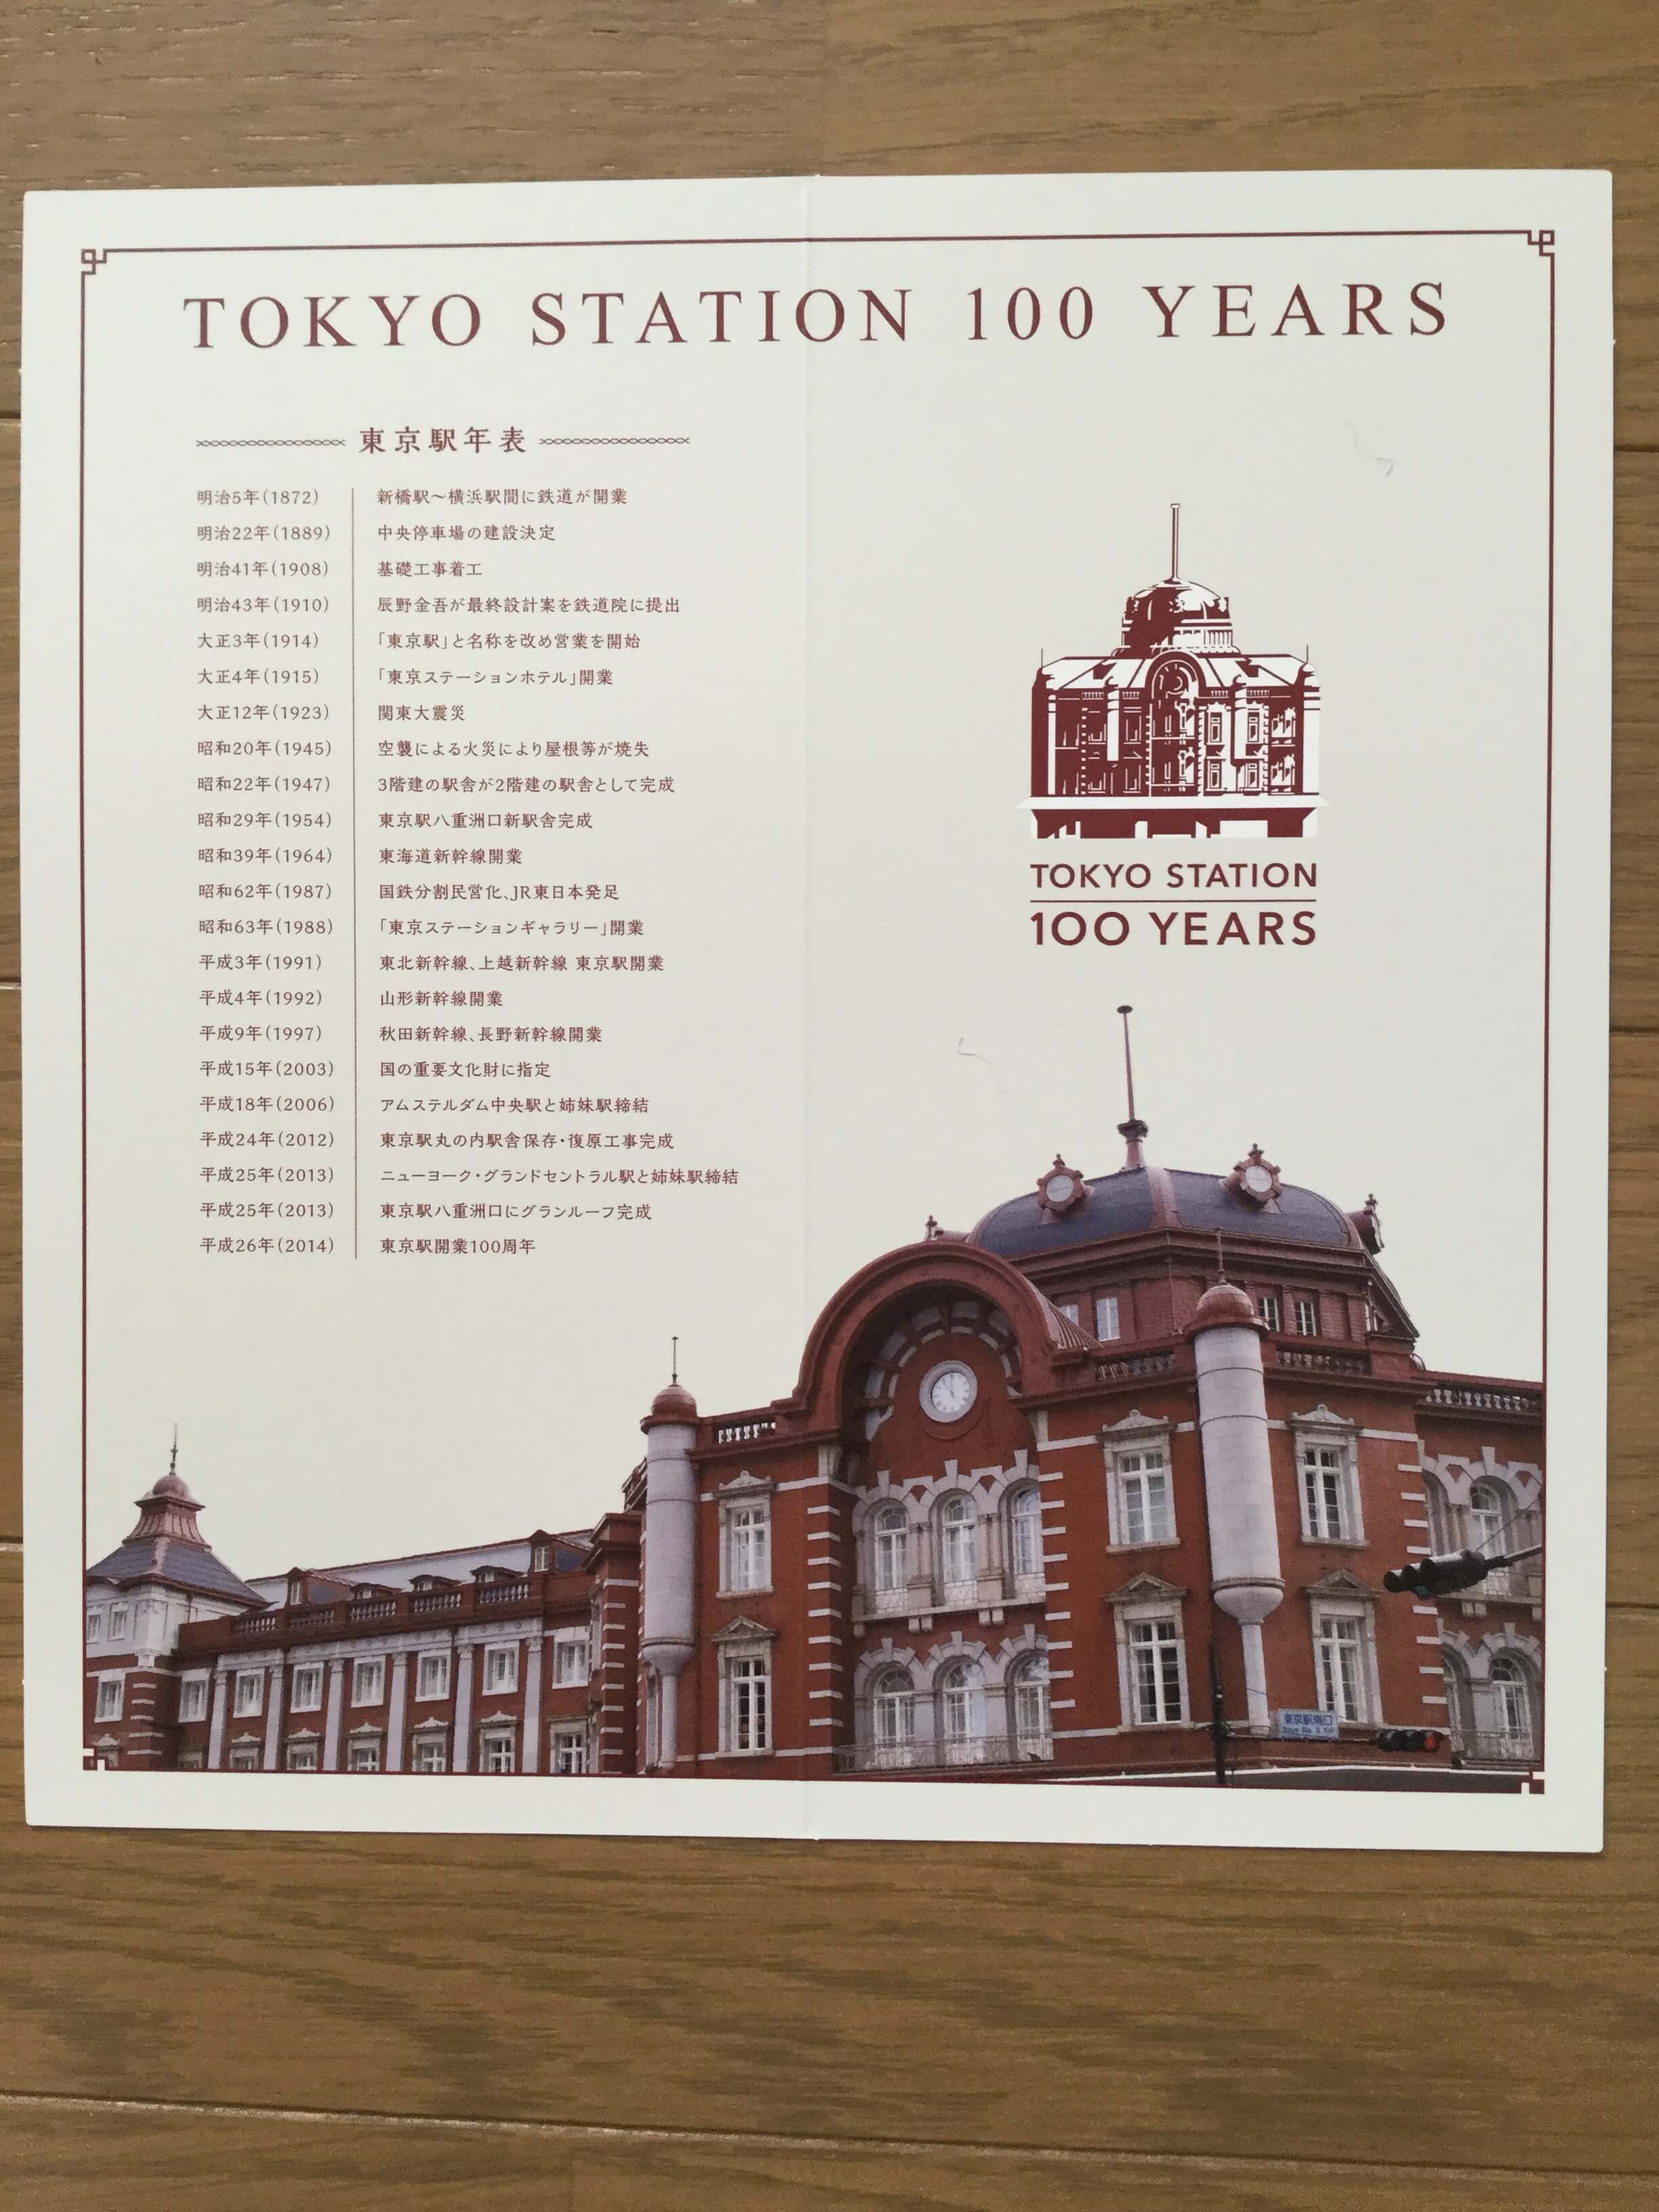 待望の 東京駅開業100周年記念suica が届いたので開封してみた Pc ウェブログ